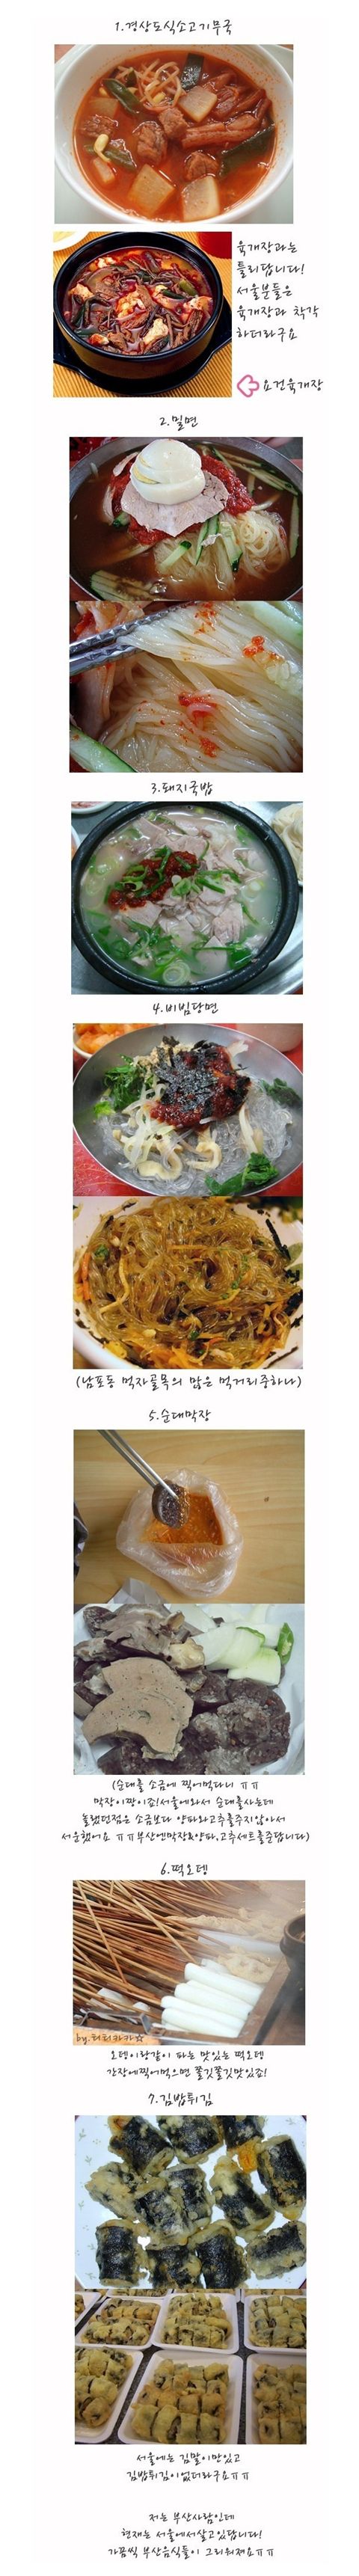 서울사람들은 모르는 음식? "맛있겠네!"